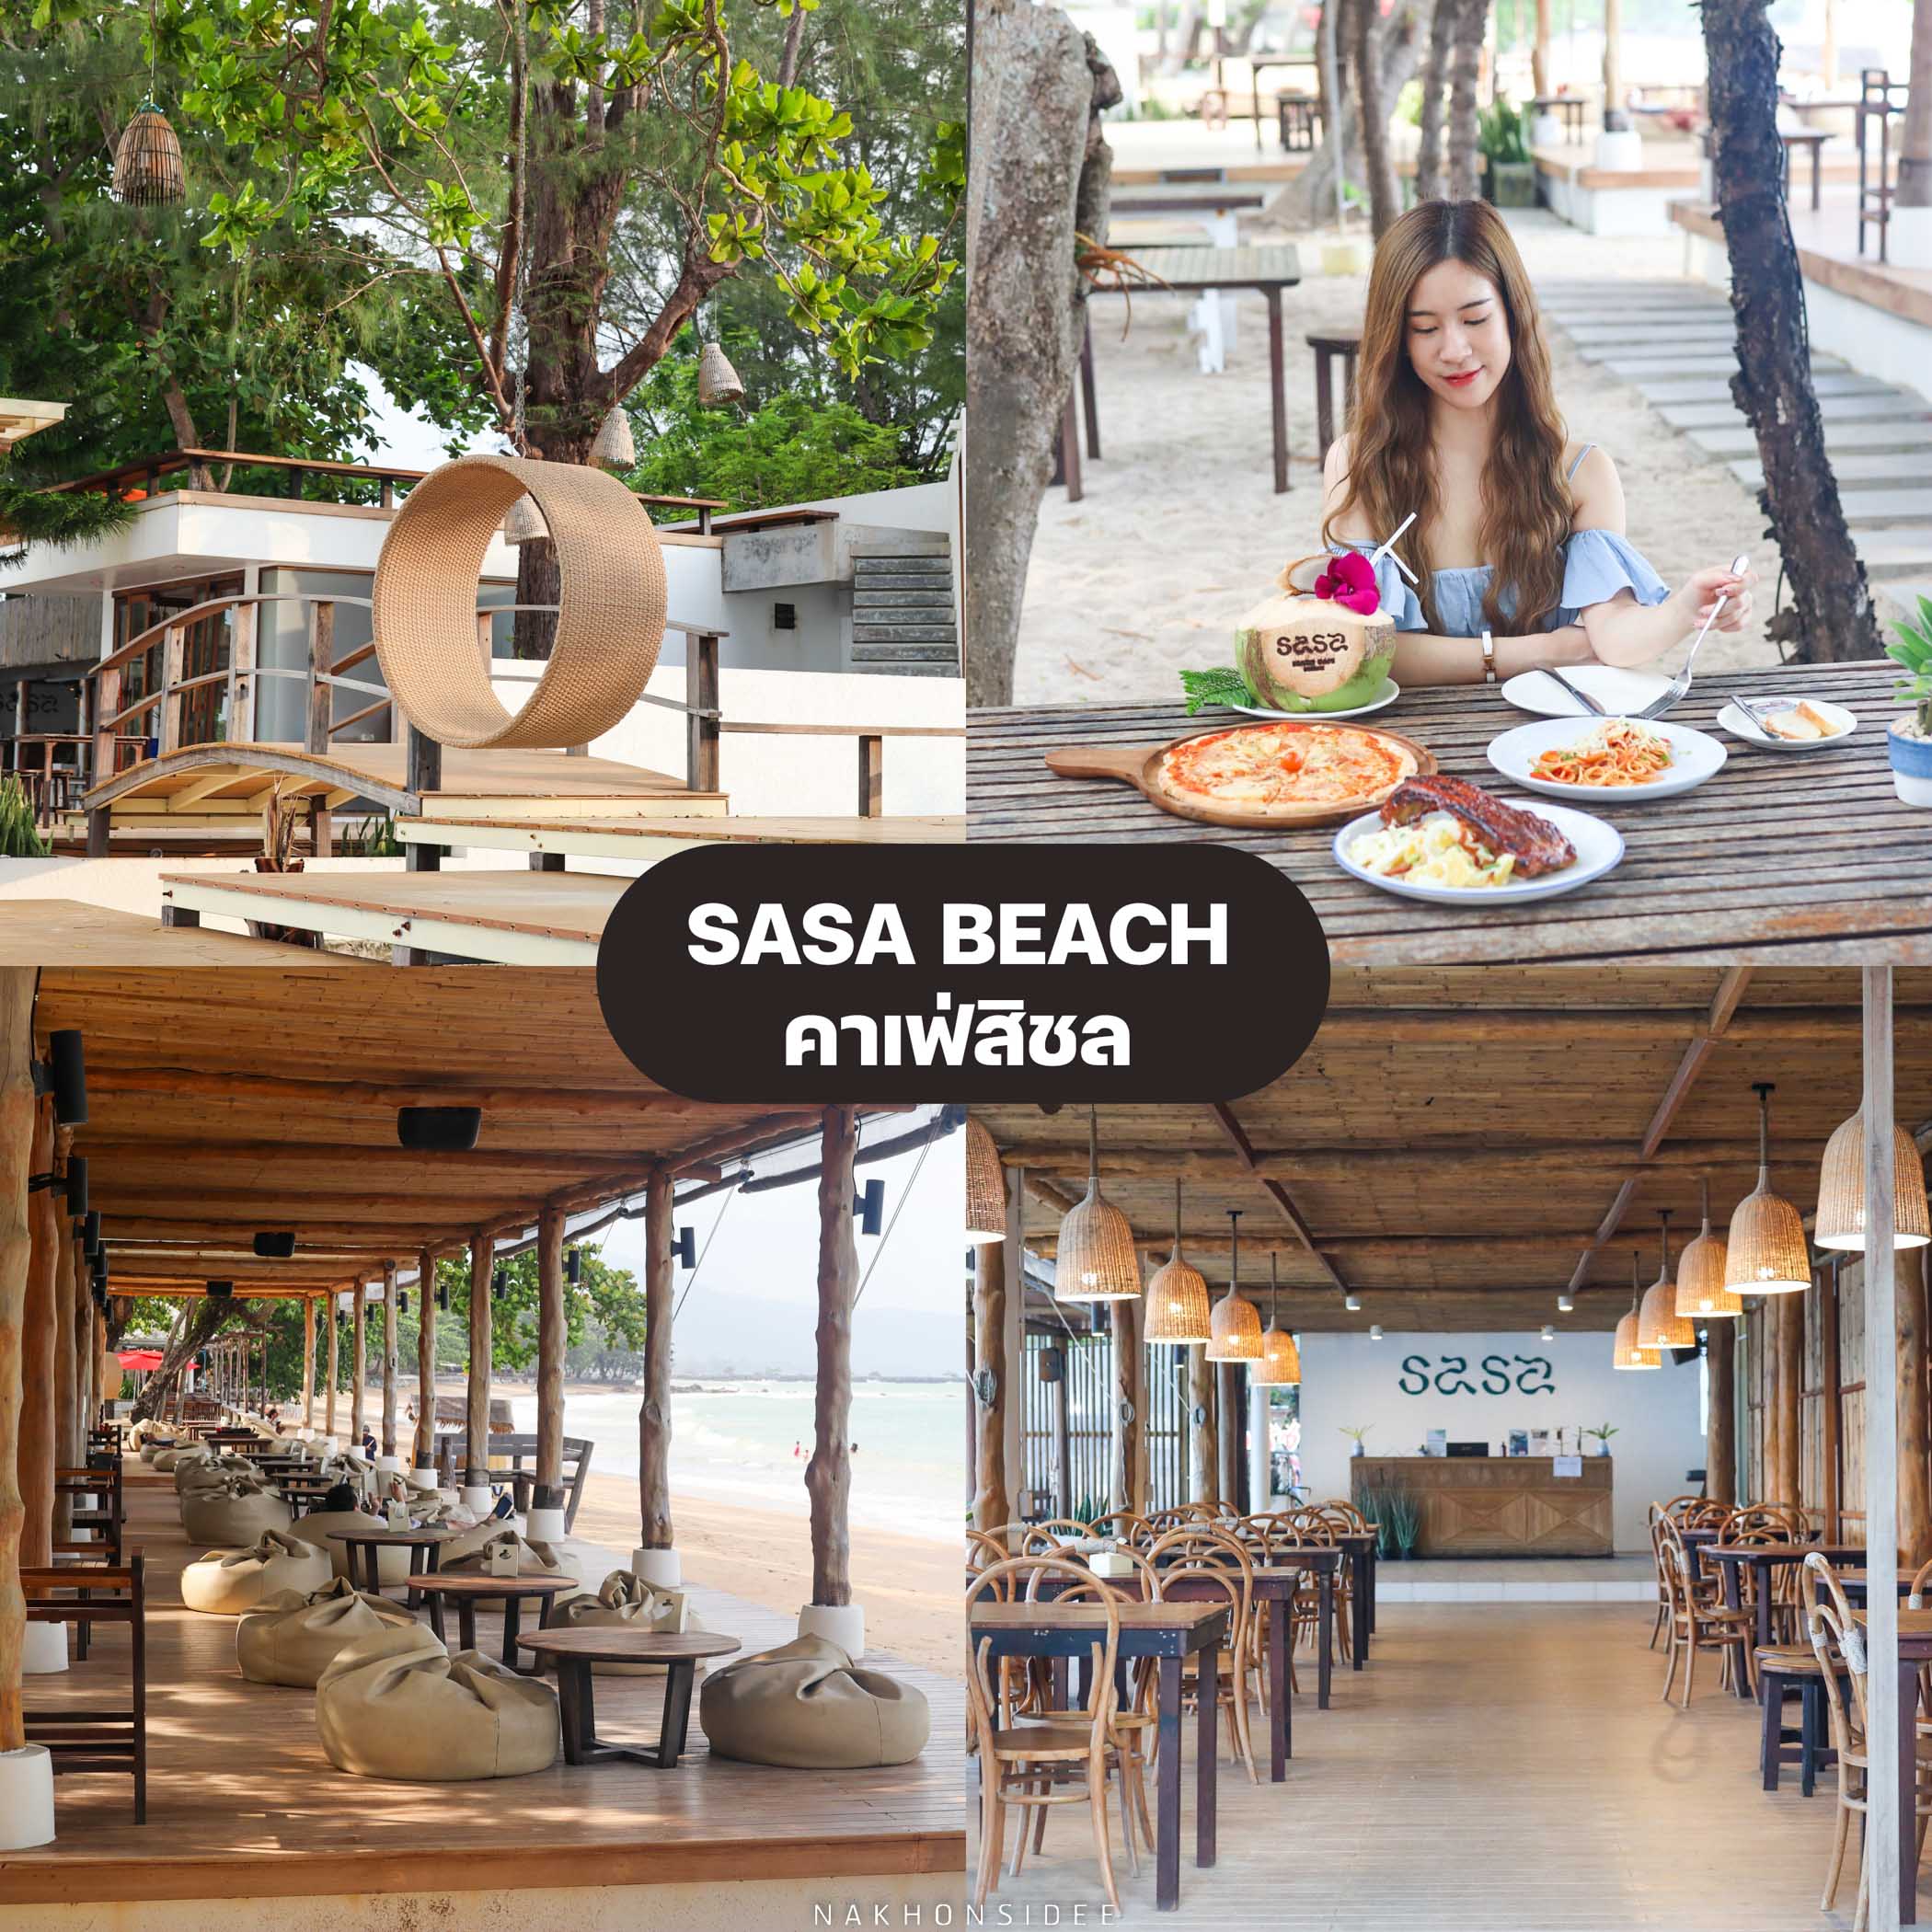 SASA-Beach-Cafe-สิชล คาเฟ่สิชลสุดสวย-ตั้งอยู่ใน-Issara-Beach-Resort-สิชล-สวยๆชิวๆริมทะเล-มีเมนูอาหารเครื่องดื่มให้เลือกมากมายทั้งสไตล์ไทย-อเมริกัน-สเต็ก-ซี่โครง-พิซซ่าก็มีน้าา-ต้องไปลองชิมกันงับ คาเฟ่สิชล,คาเฟ่ขนอม,จุดเช็คอินสิชล,จุดเช็คอินขนอม,นครศรีธรรมราช